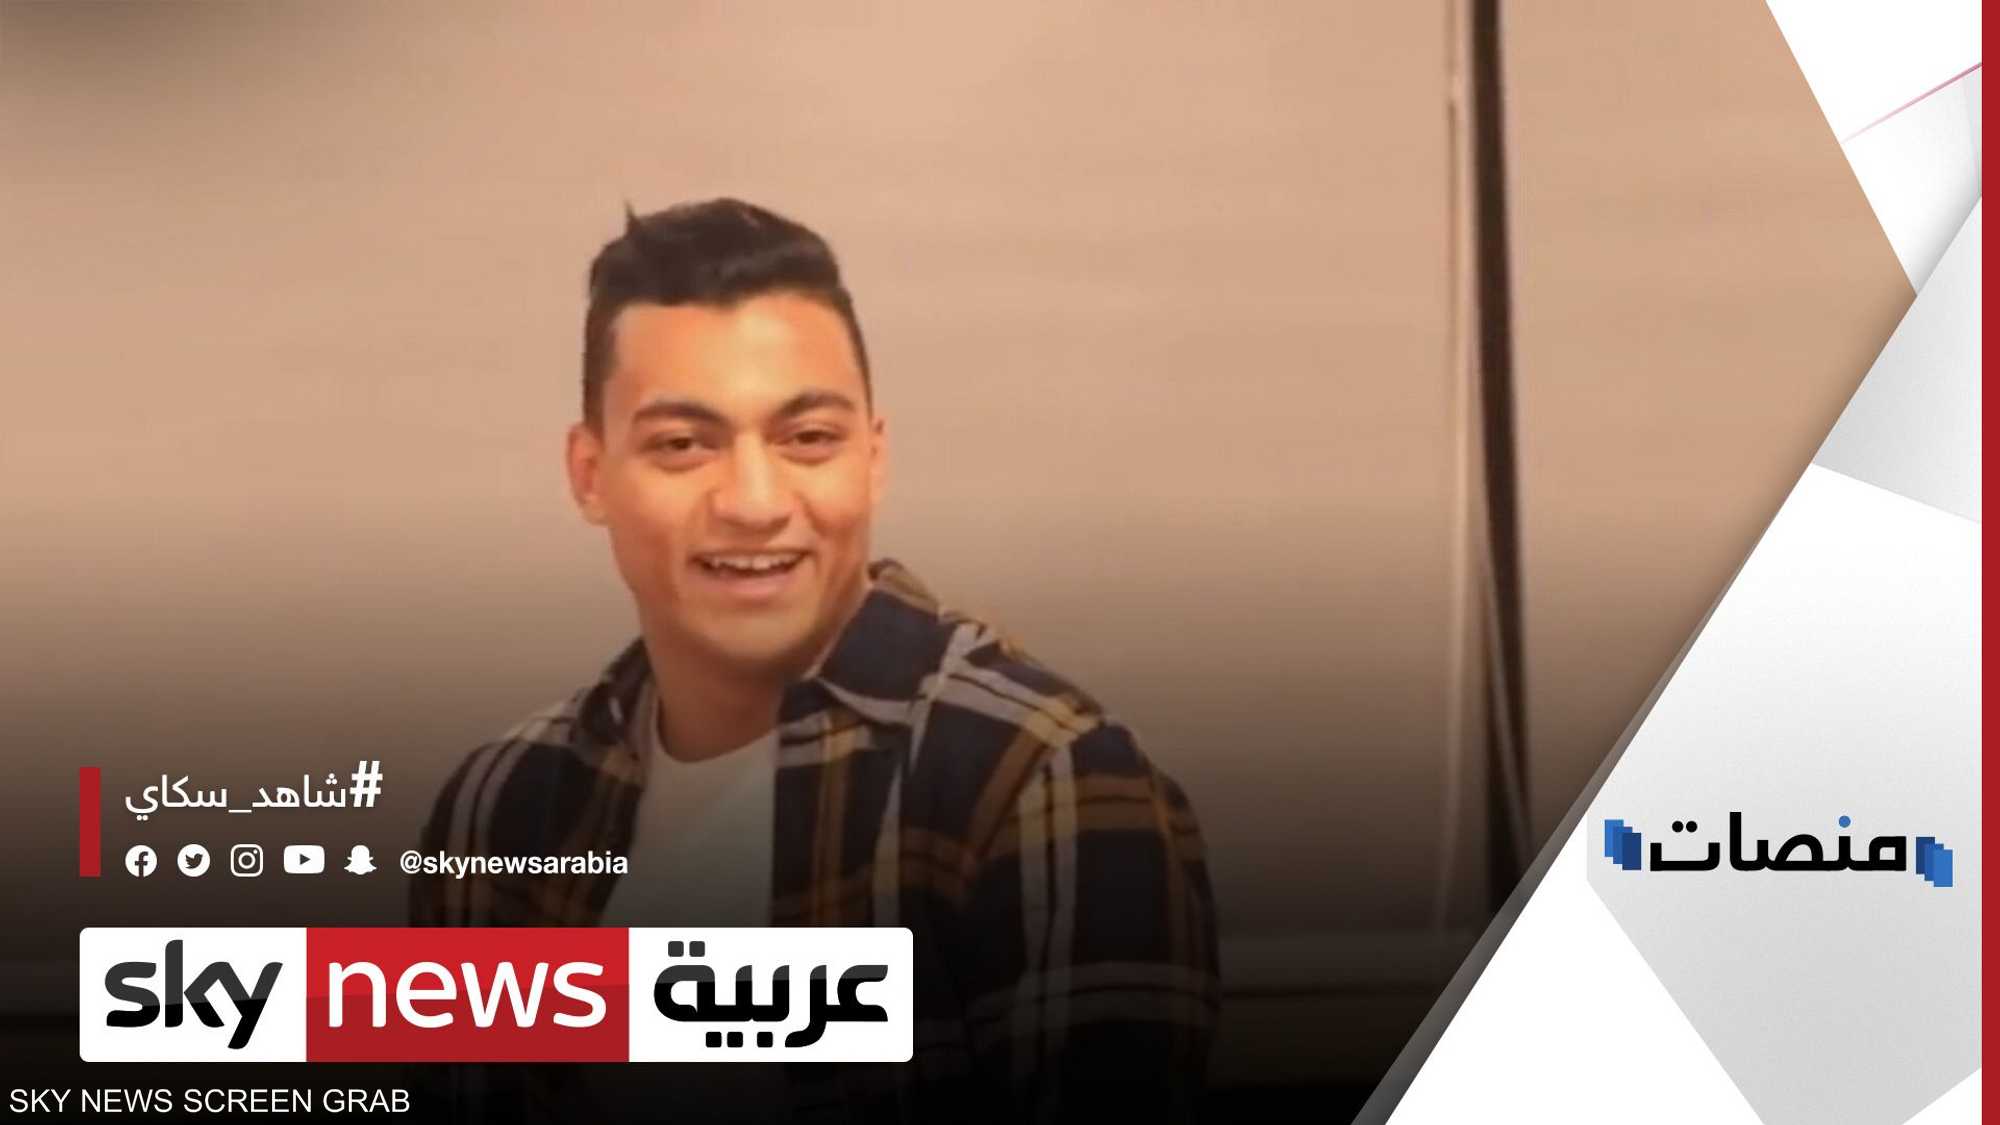 ضبط طالب يؤدي الامتحان عوضا عن لاعب بالمنتخب المصري